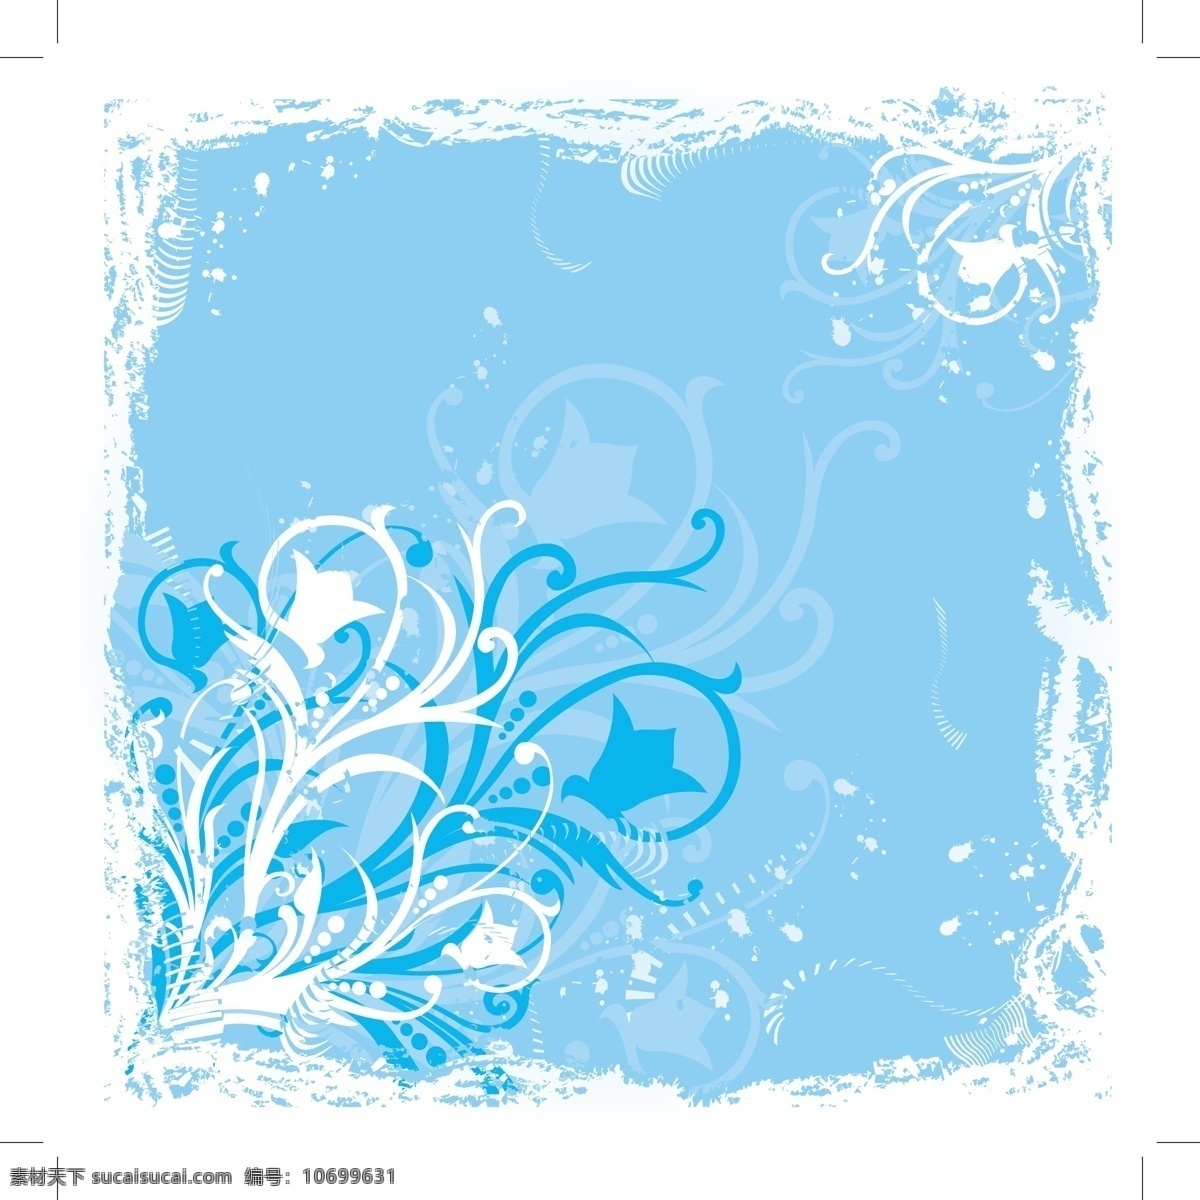 蓝色 花卉 图形 flash 背景 滚动 框架 垃圾 鲜花 漩涡 有机 植物 自然 摘要 元 矢量图 文化艺术